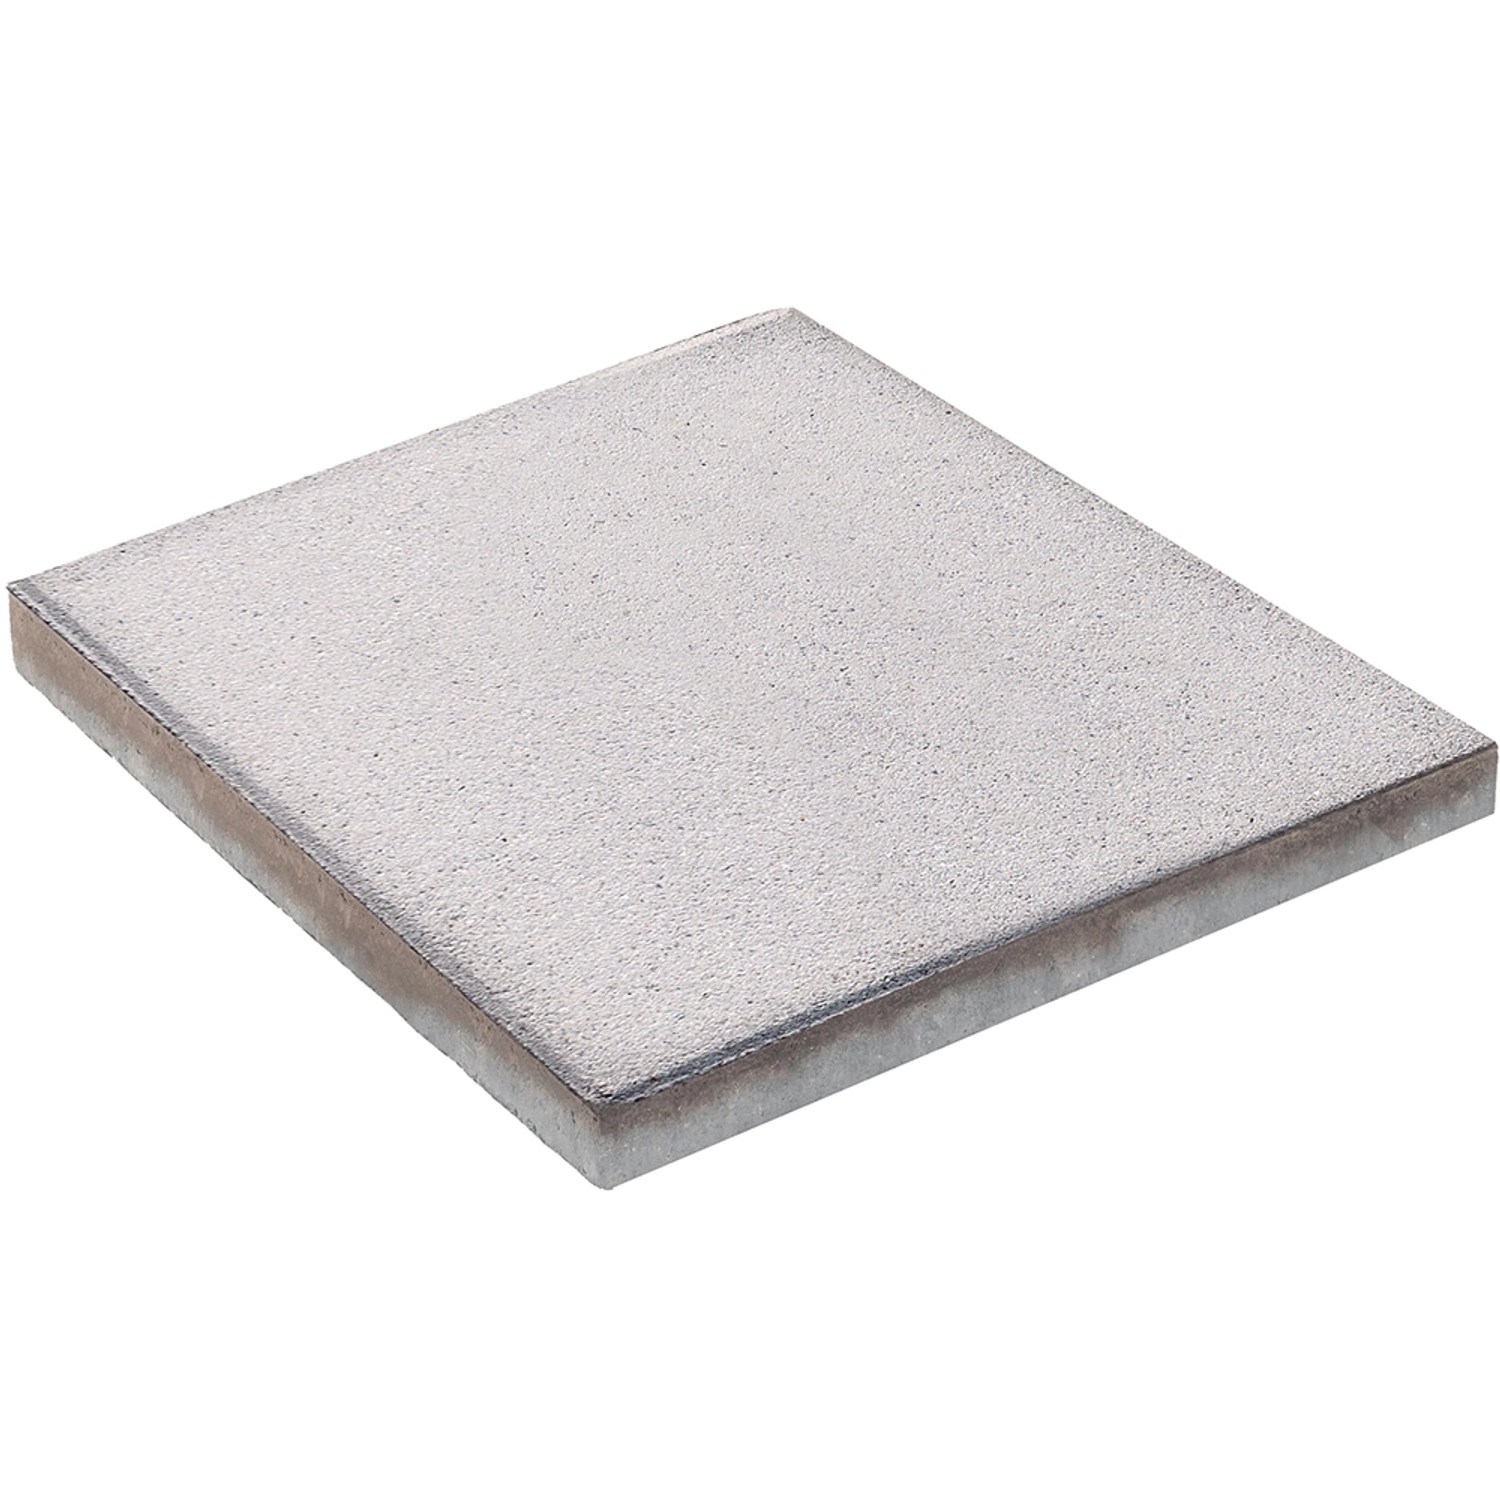 Diephaus Terrassenplatte Nano Tec Grau-Weiß 40 x 40 x 4 cm